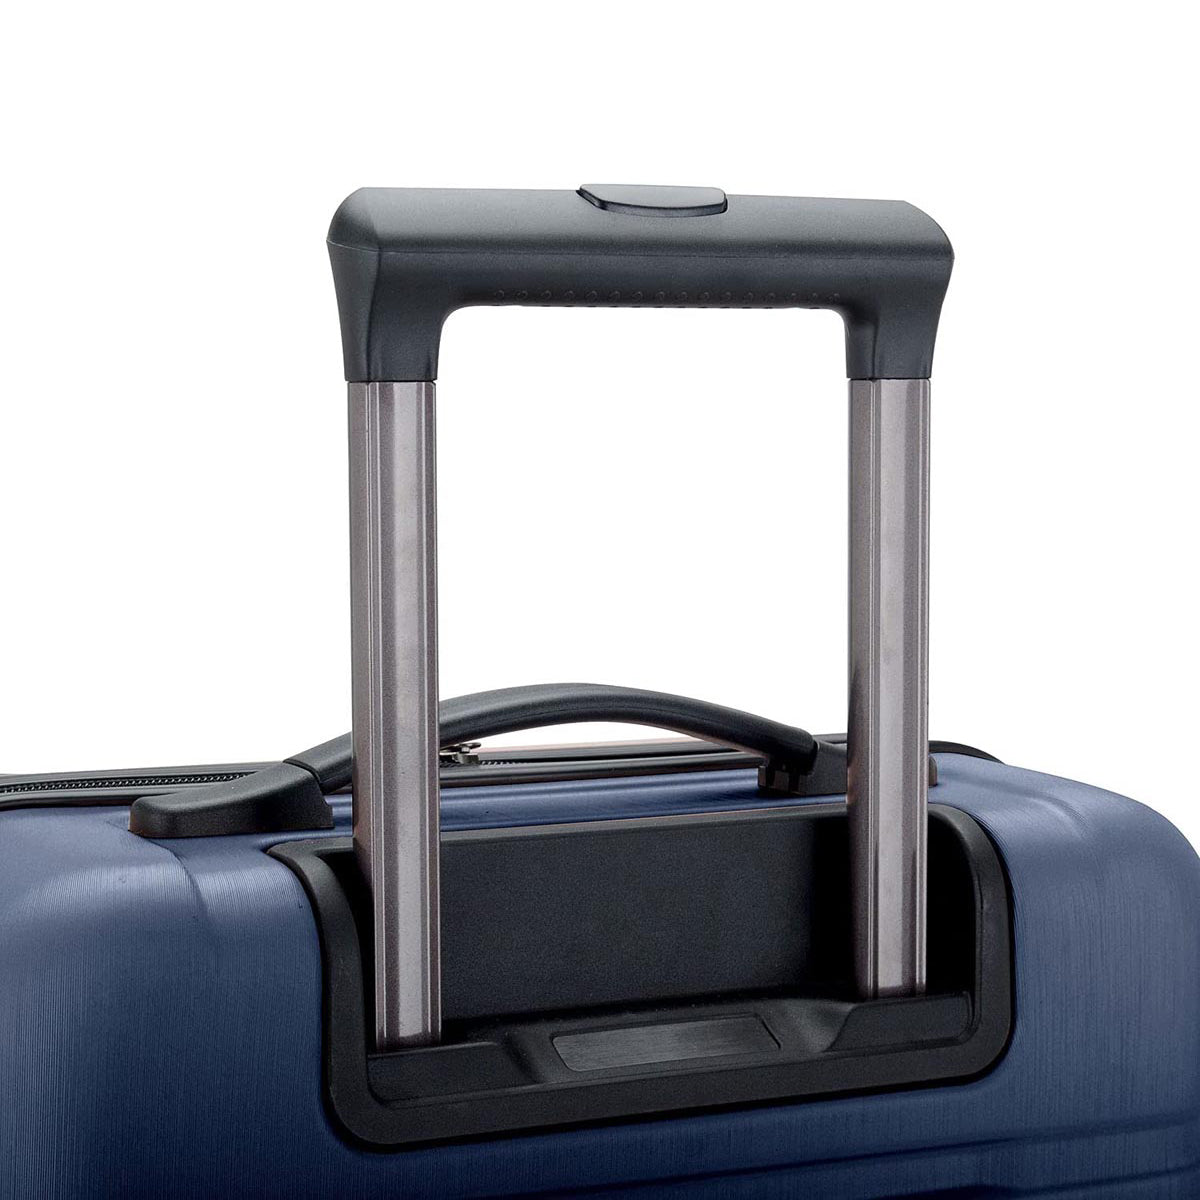 U.S. Traveler Boren Hardside Spinner Luggage With Aluminum Handle, 3-Piece Set